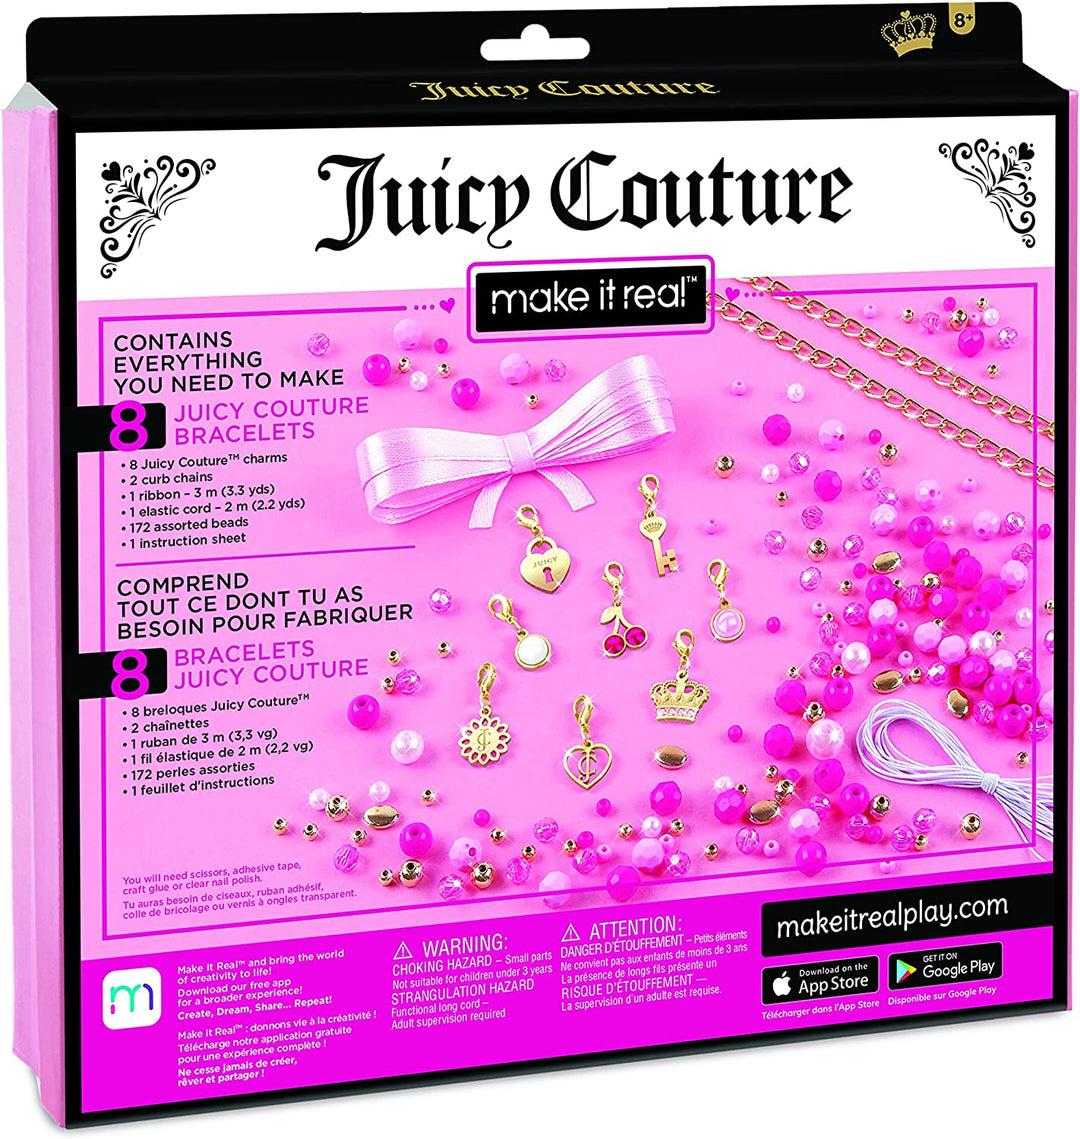 Machen Sie es zu einem echten Juicy Couture Perfectly Pink